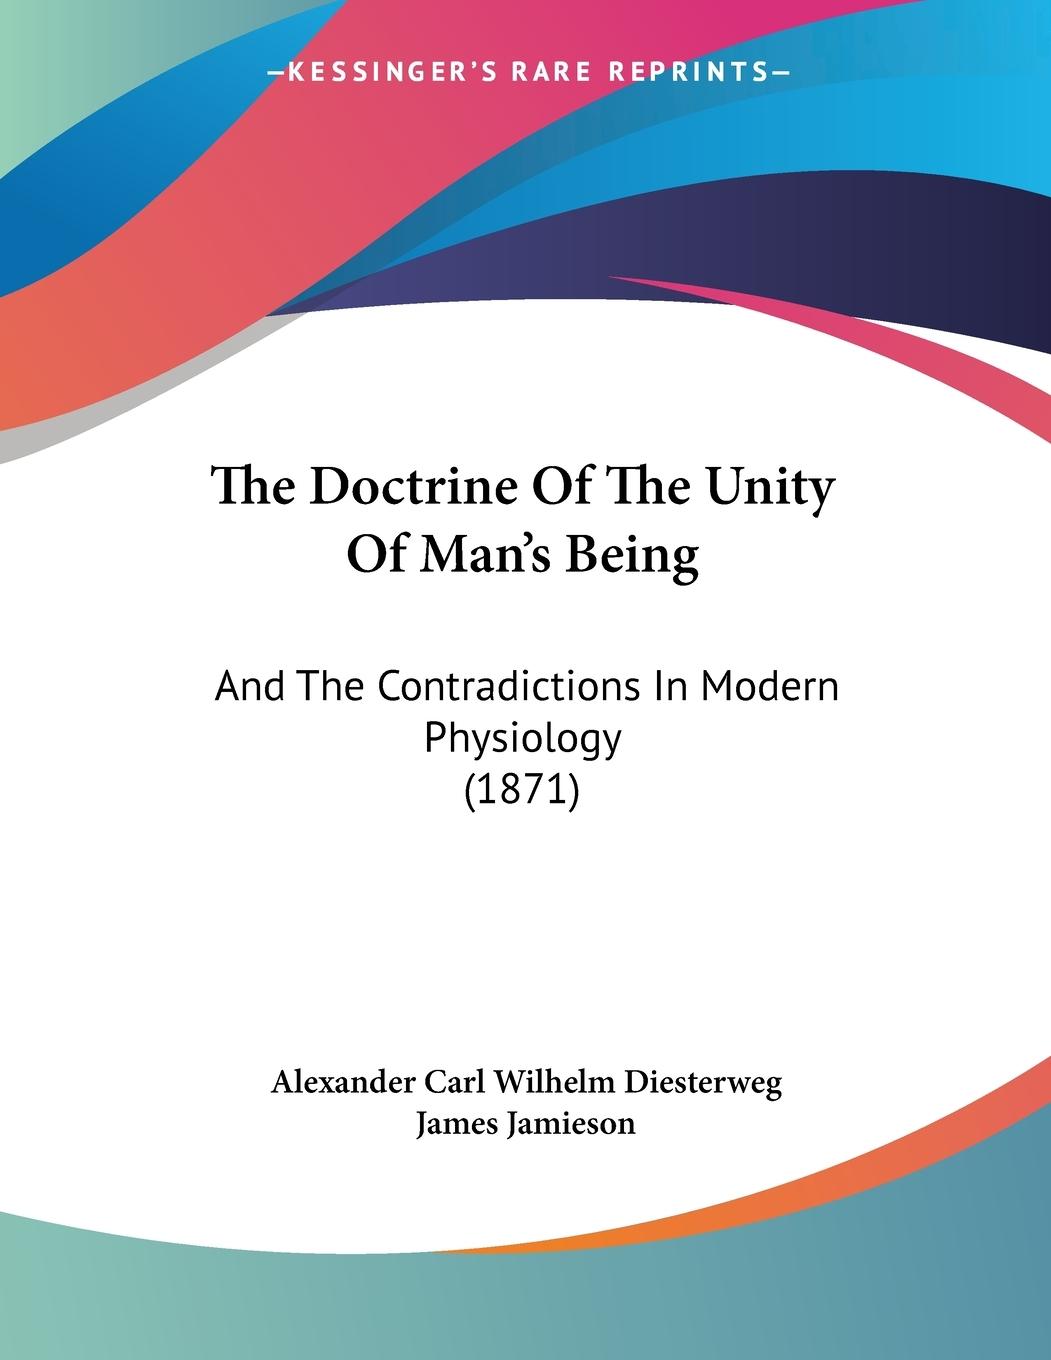 The Doctrine Of The Unity Of Man s Being - Diesterweg, Alexander Carl Wilhelm